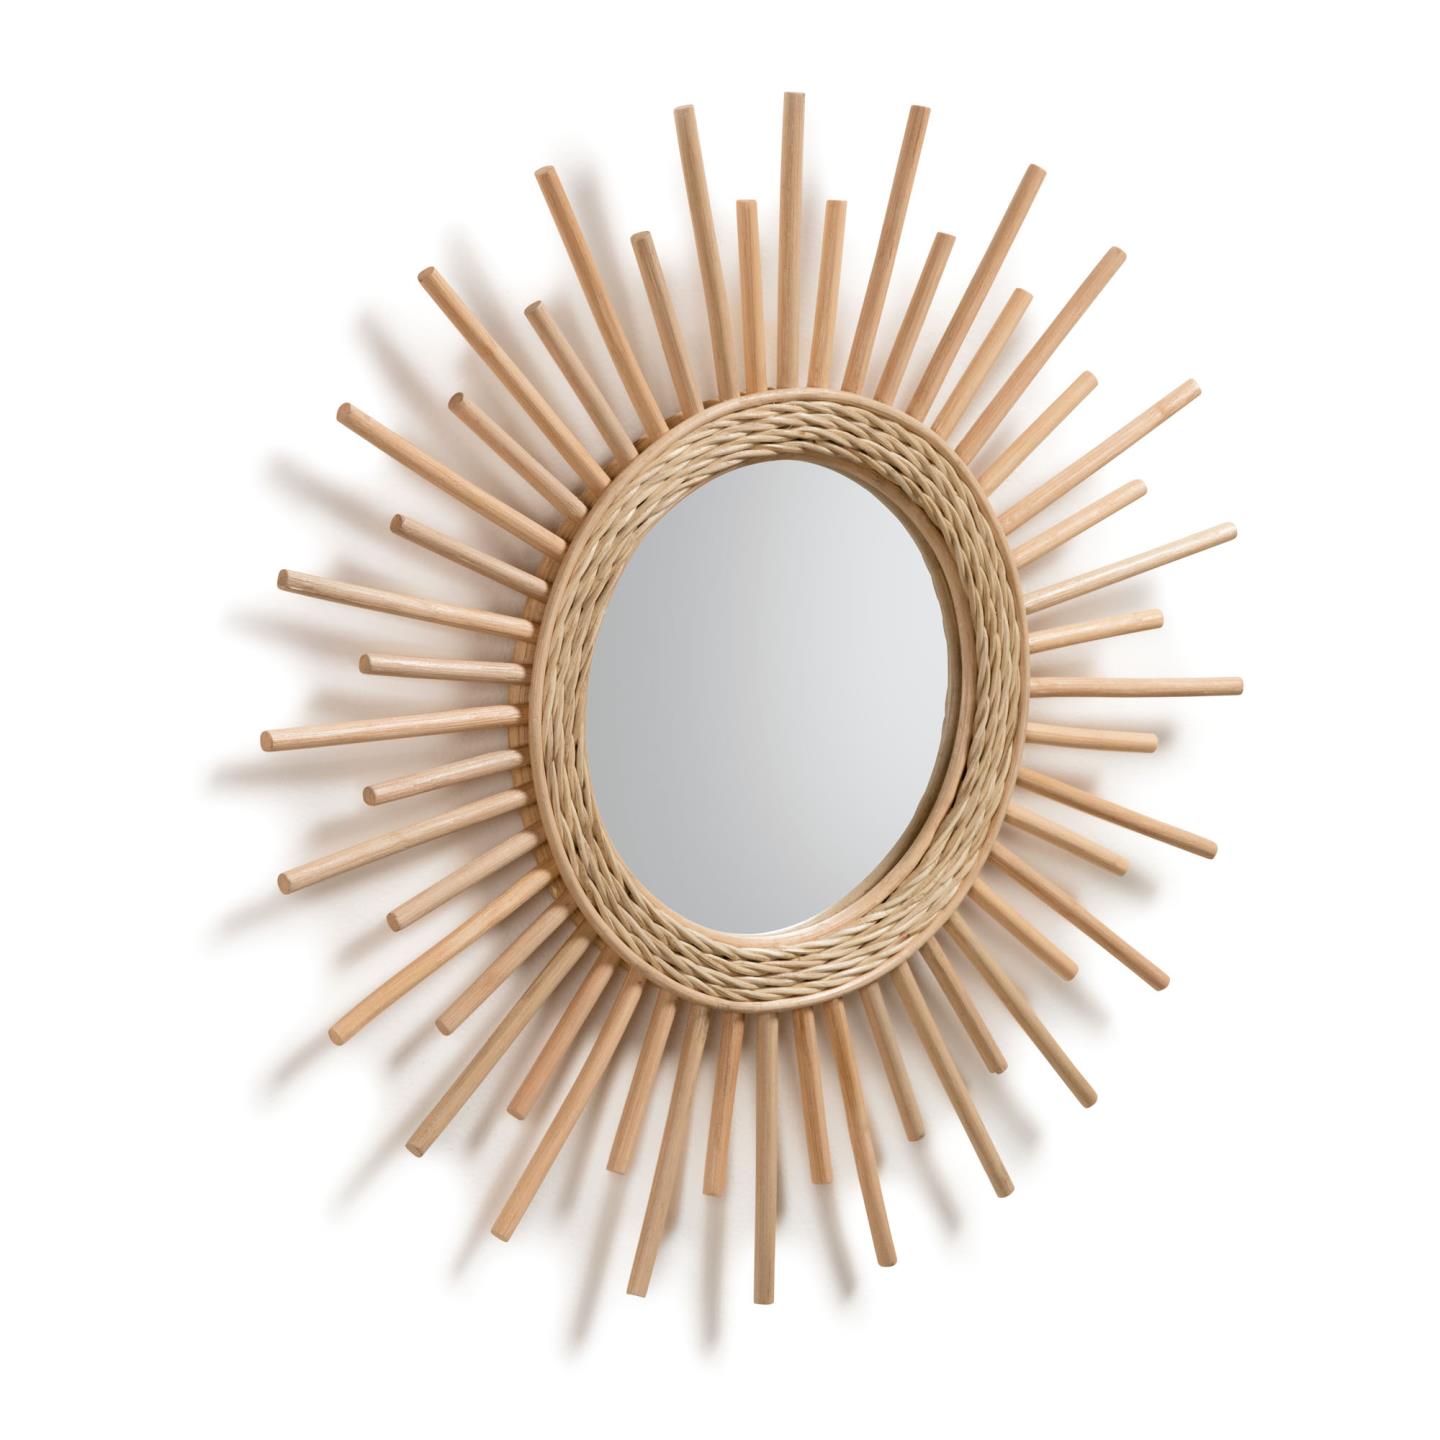 Эксклюзивное зеркало солнце в резной раме из дерева золото серебро